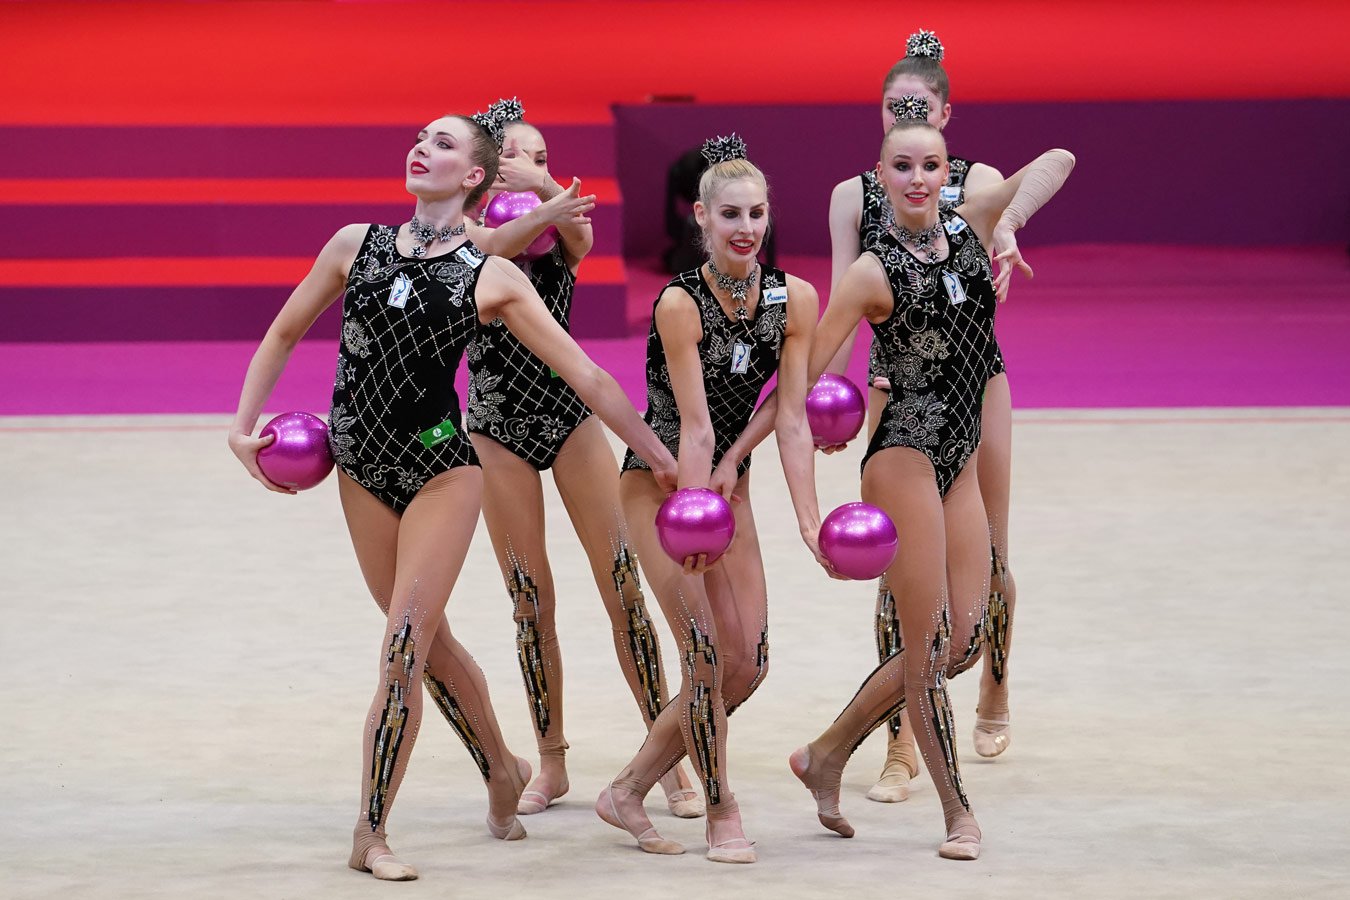 Сборная России выиграла золото в групповых упражнениях с пятью мячами на  чемпионате мира - Чемпионат